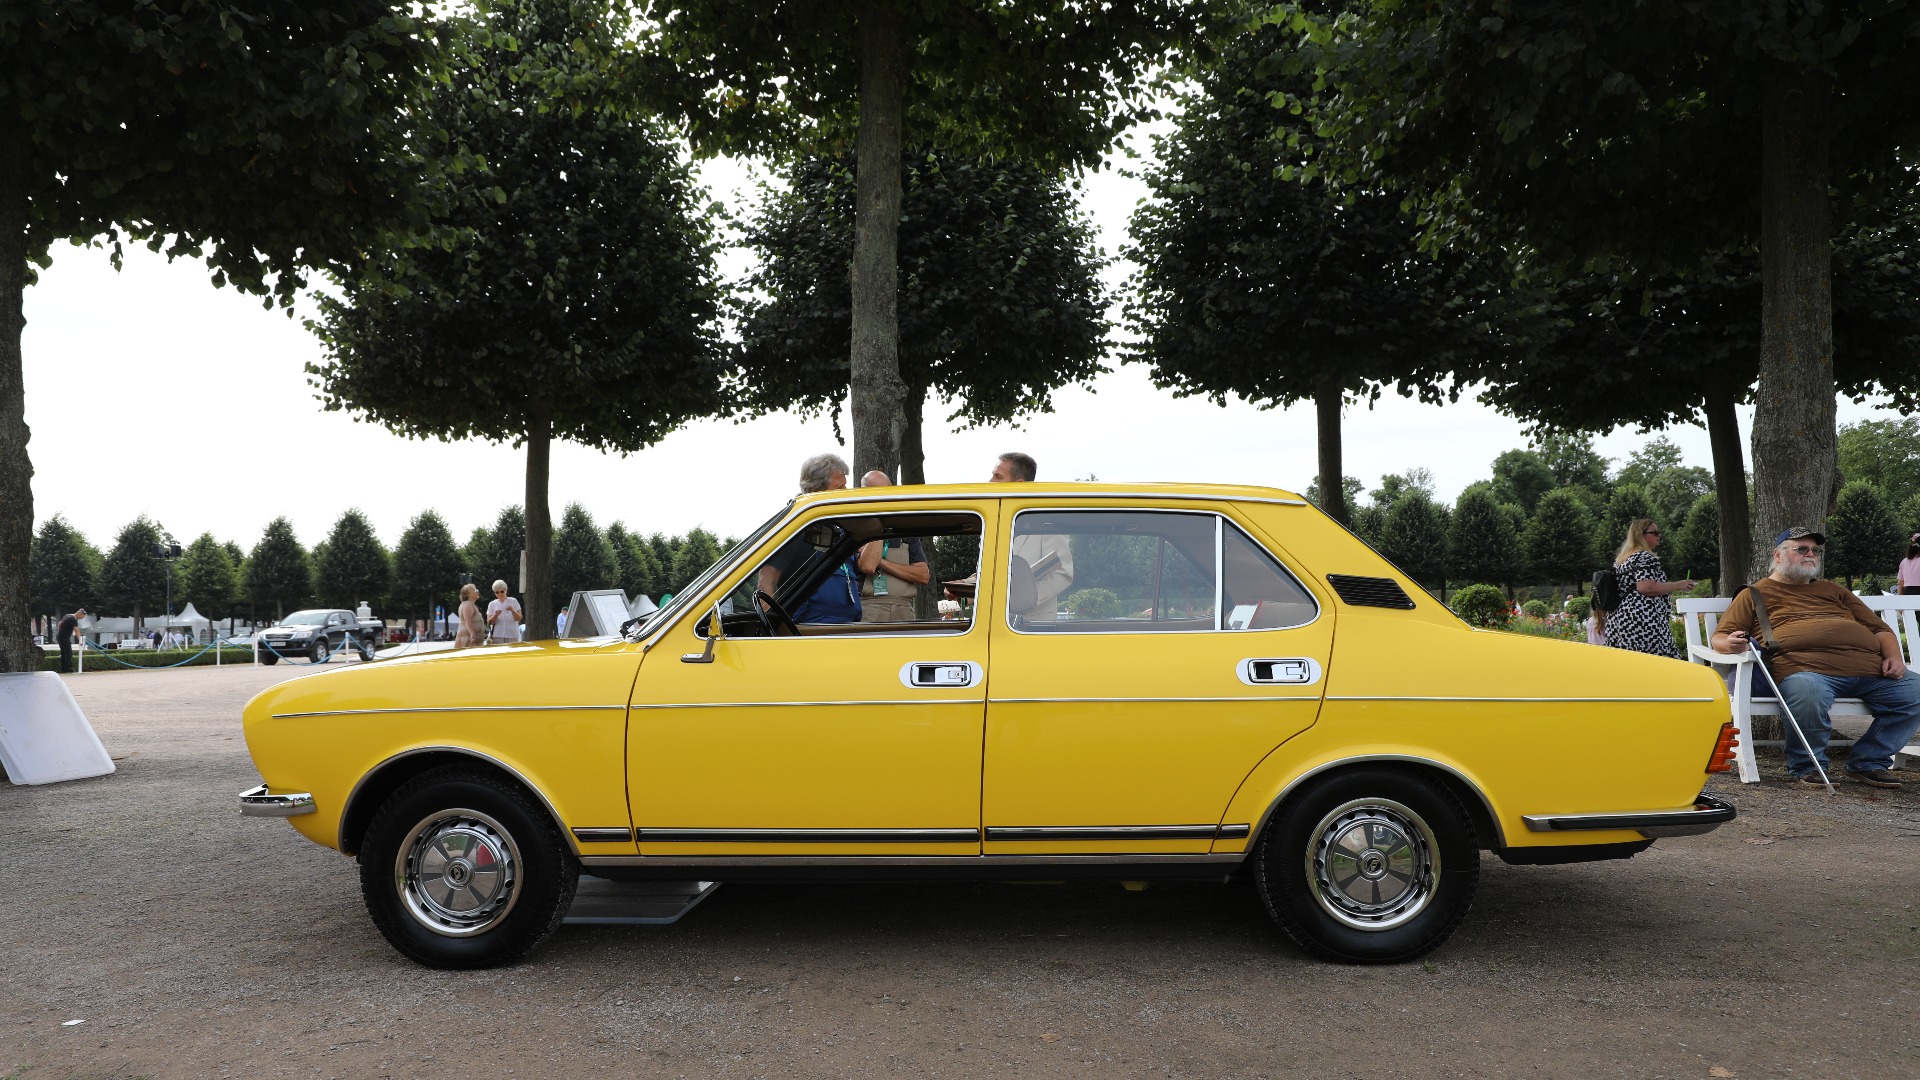 Også i sideprofil ser man at det er noe som skurrer i forhold til en original Fiat 132.